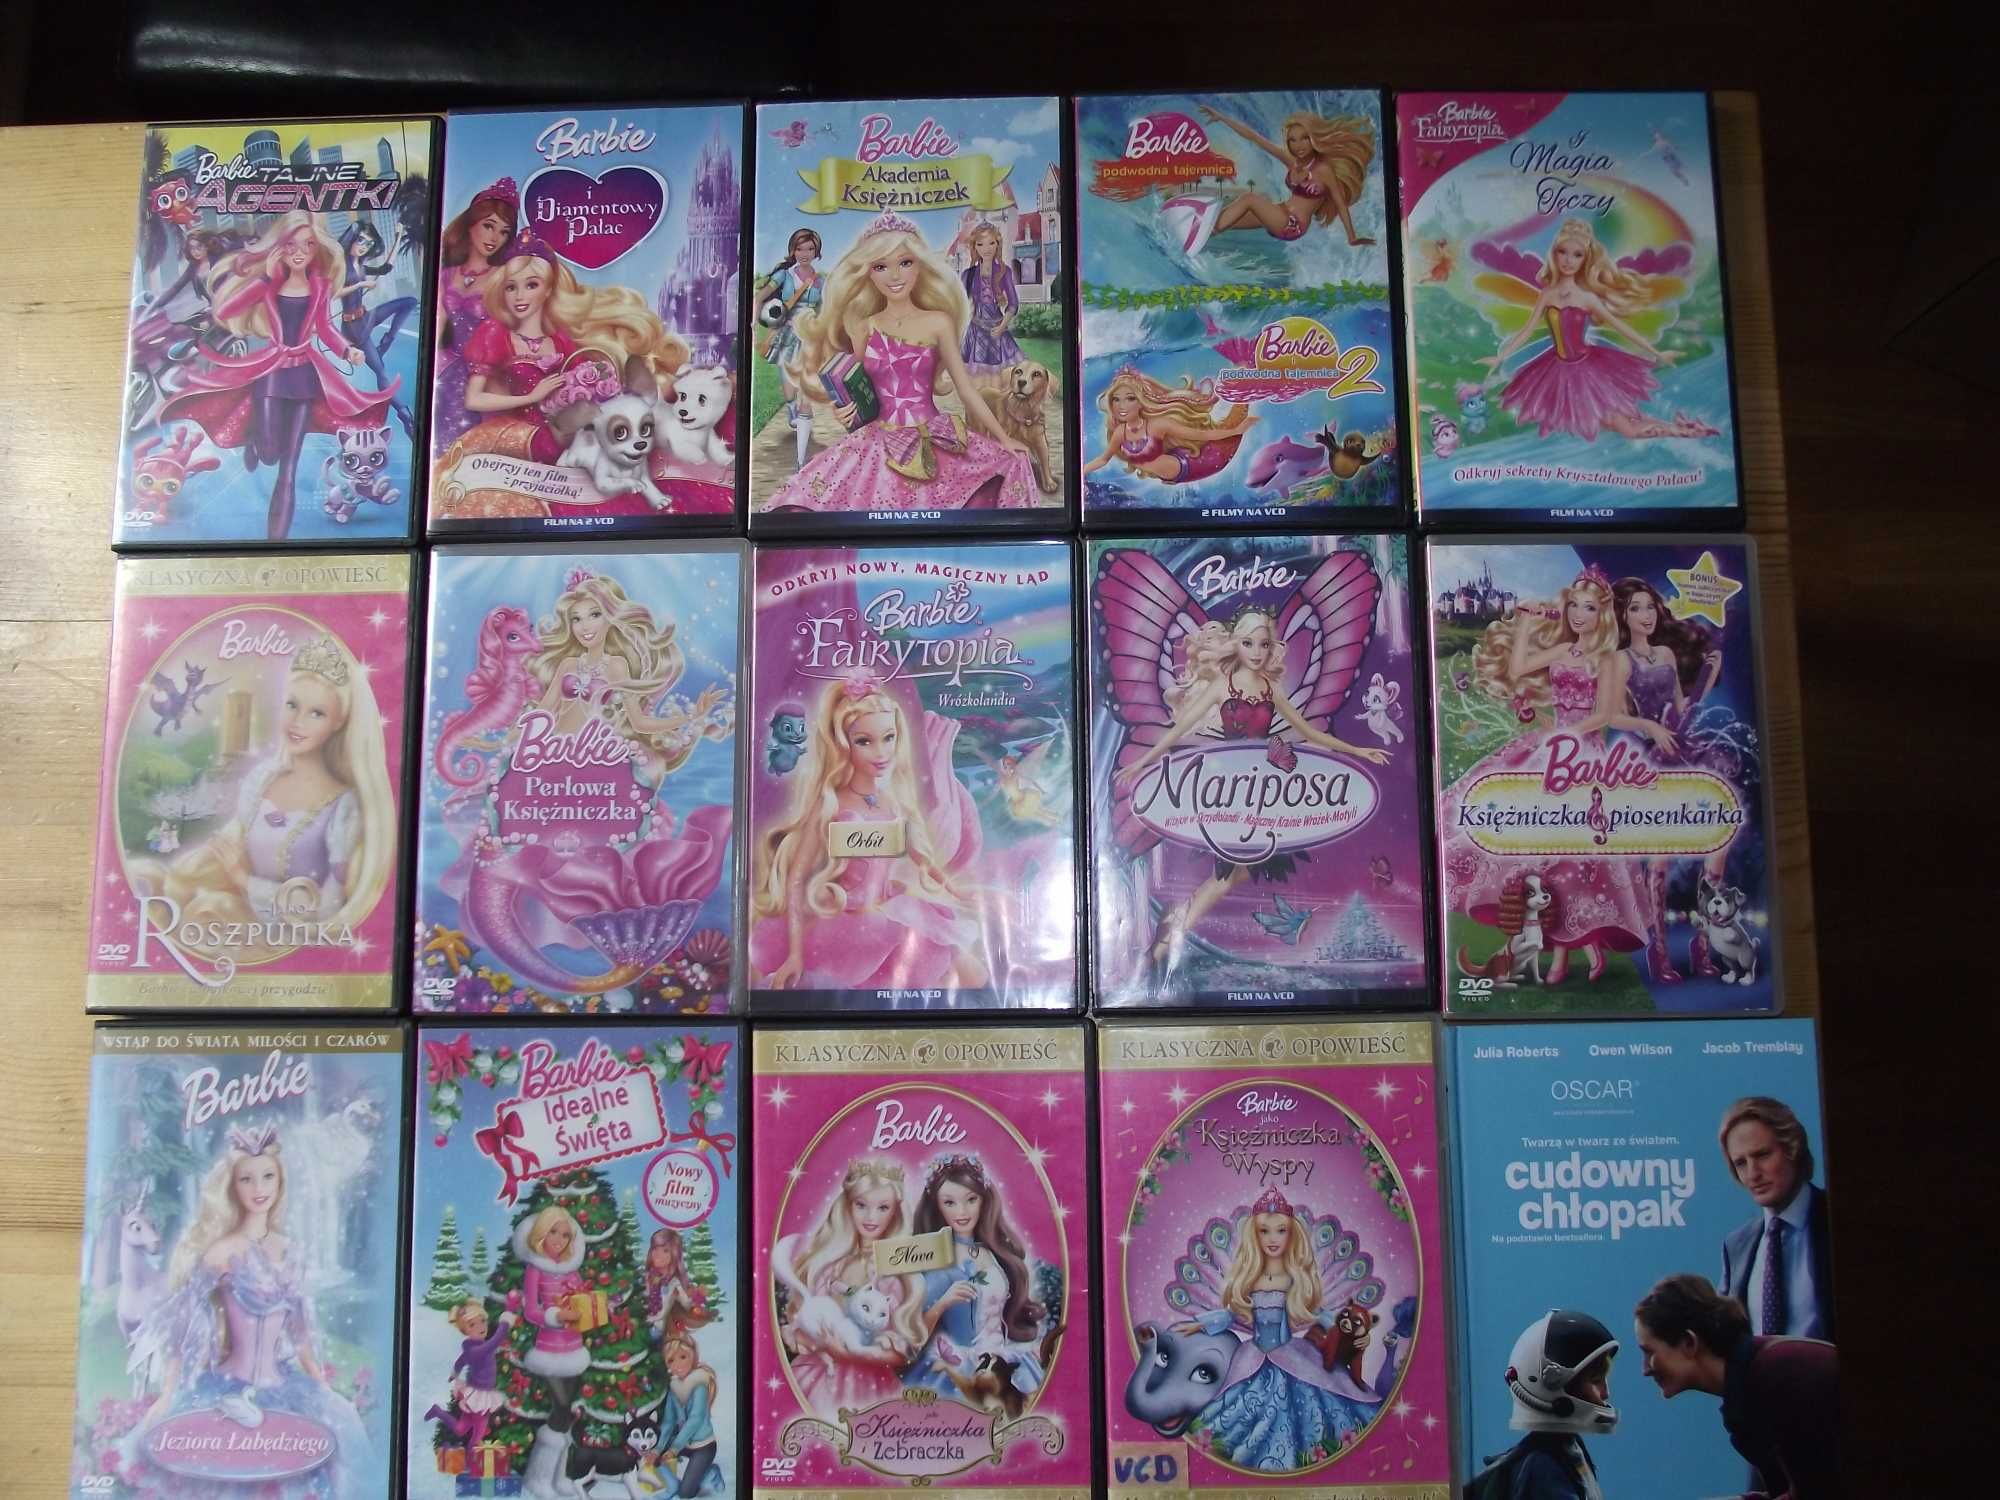 Barbie, bajki, vcd, dvd, kolekcja 10 filmów, księżniczka, film